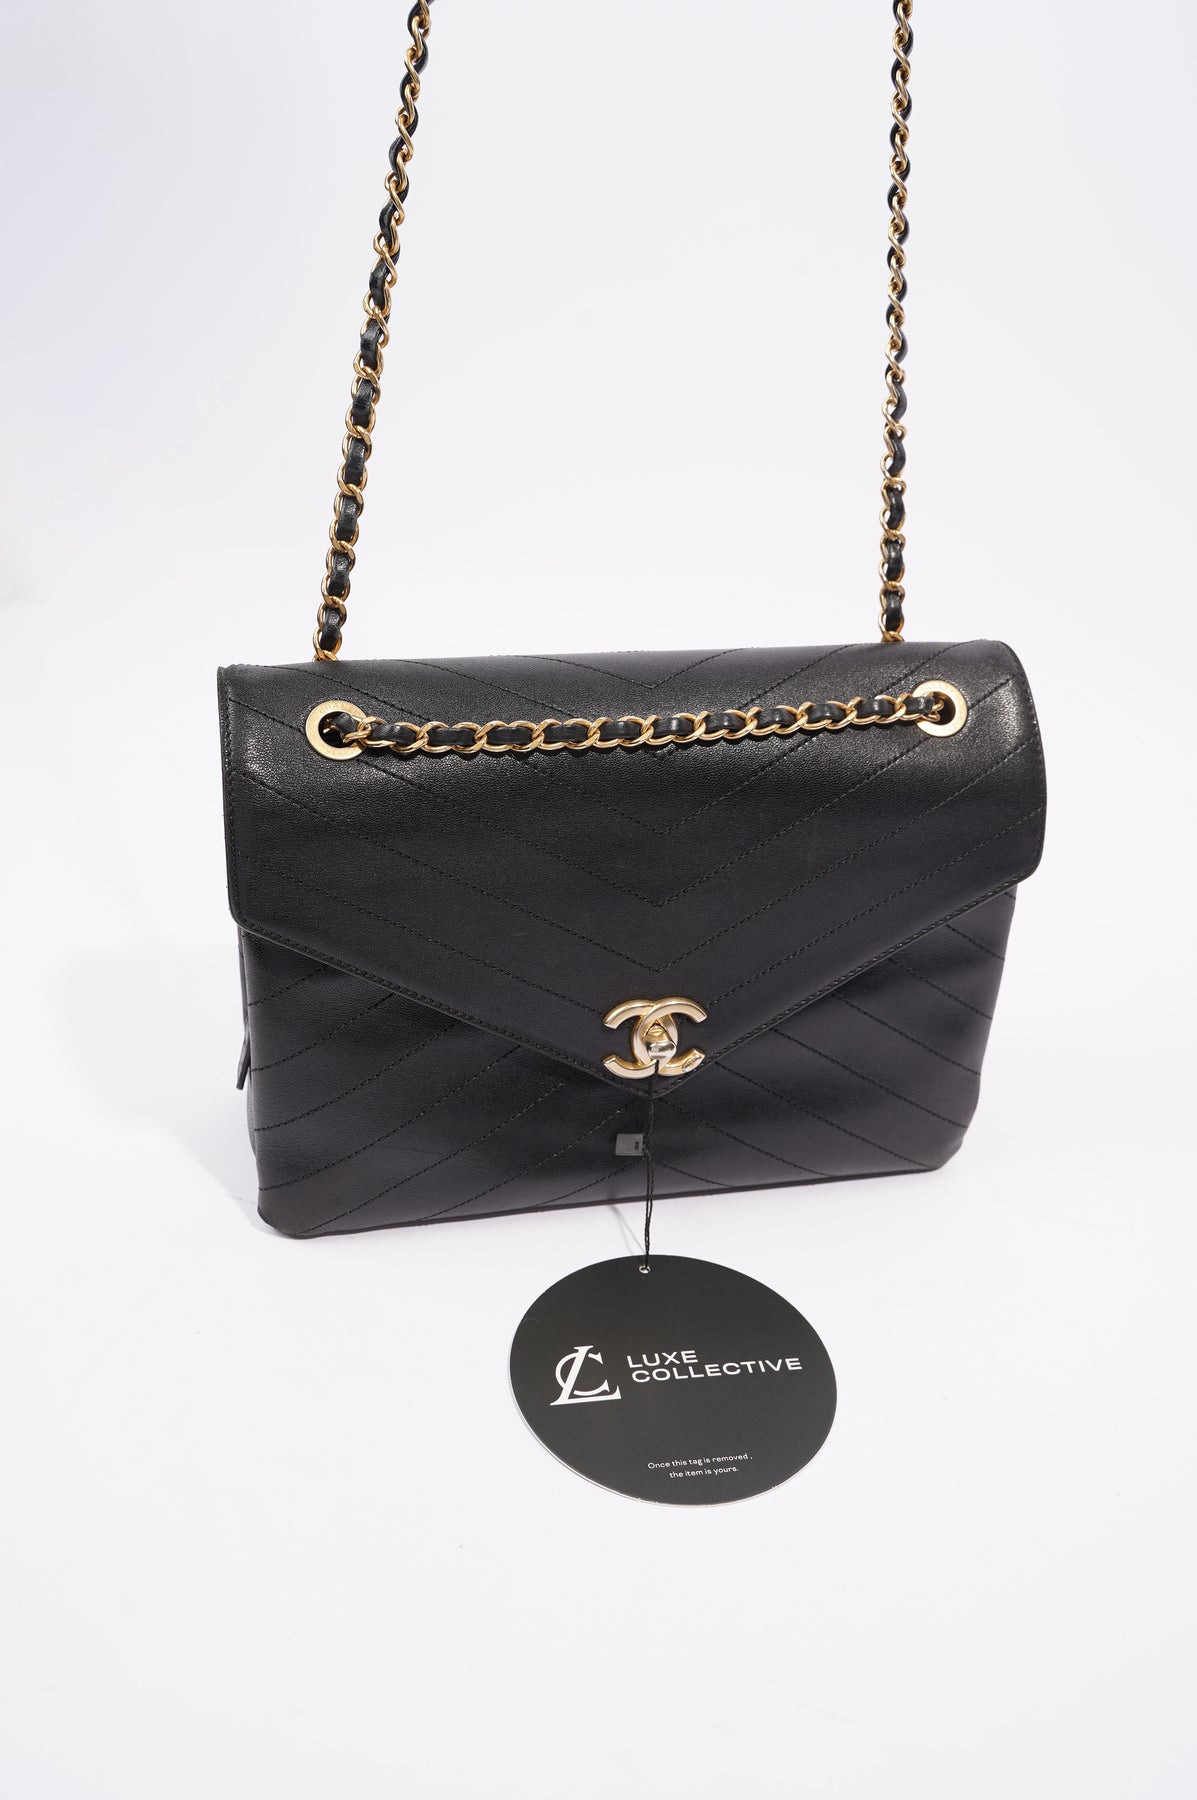 Chanel Lambskin Crossbody Bags for Women